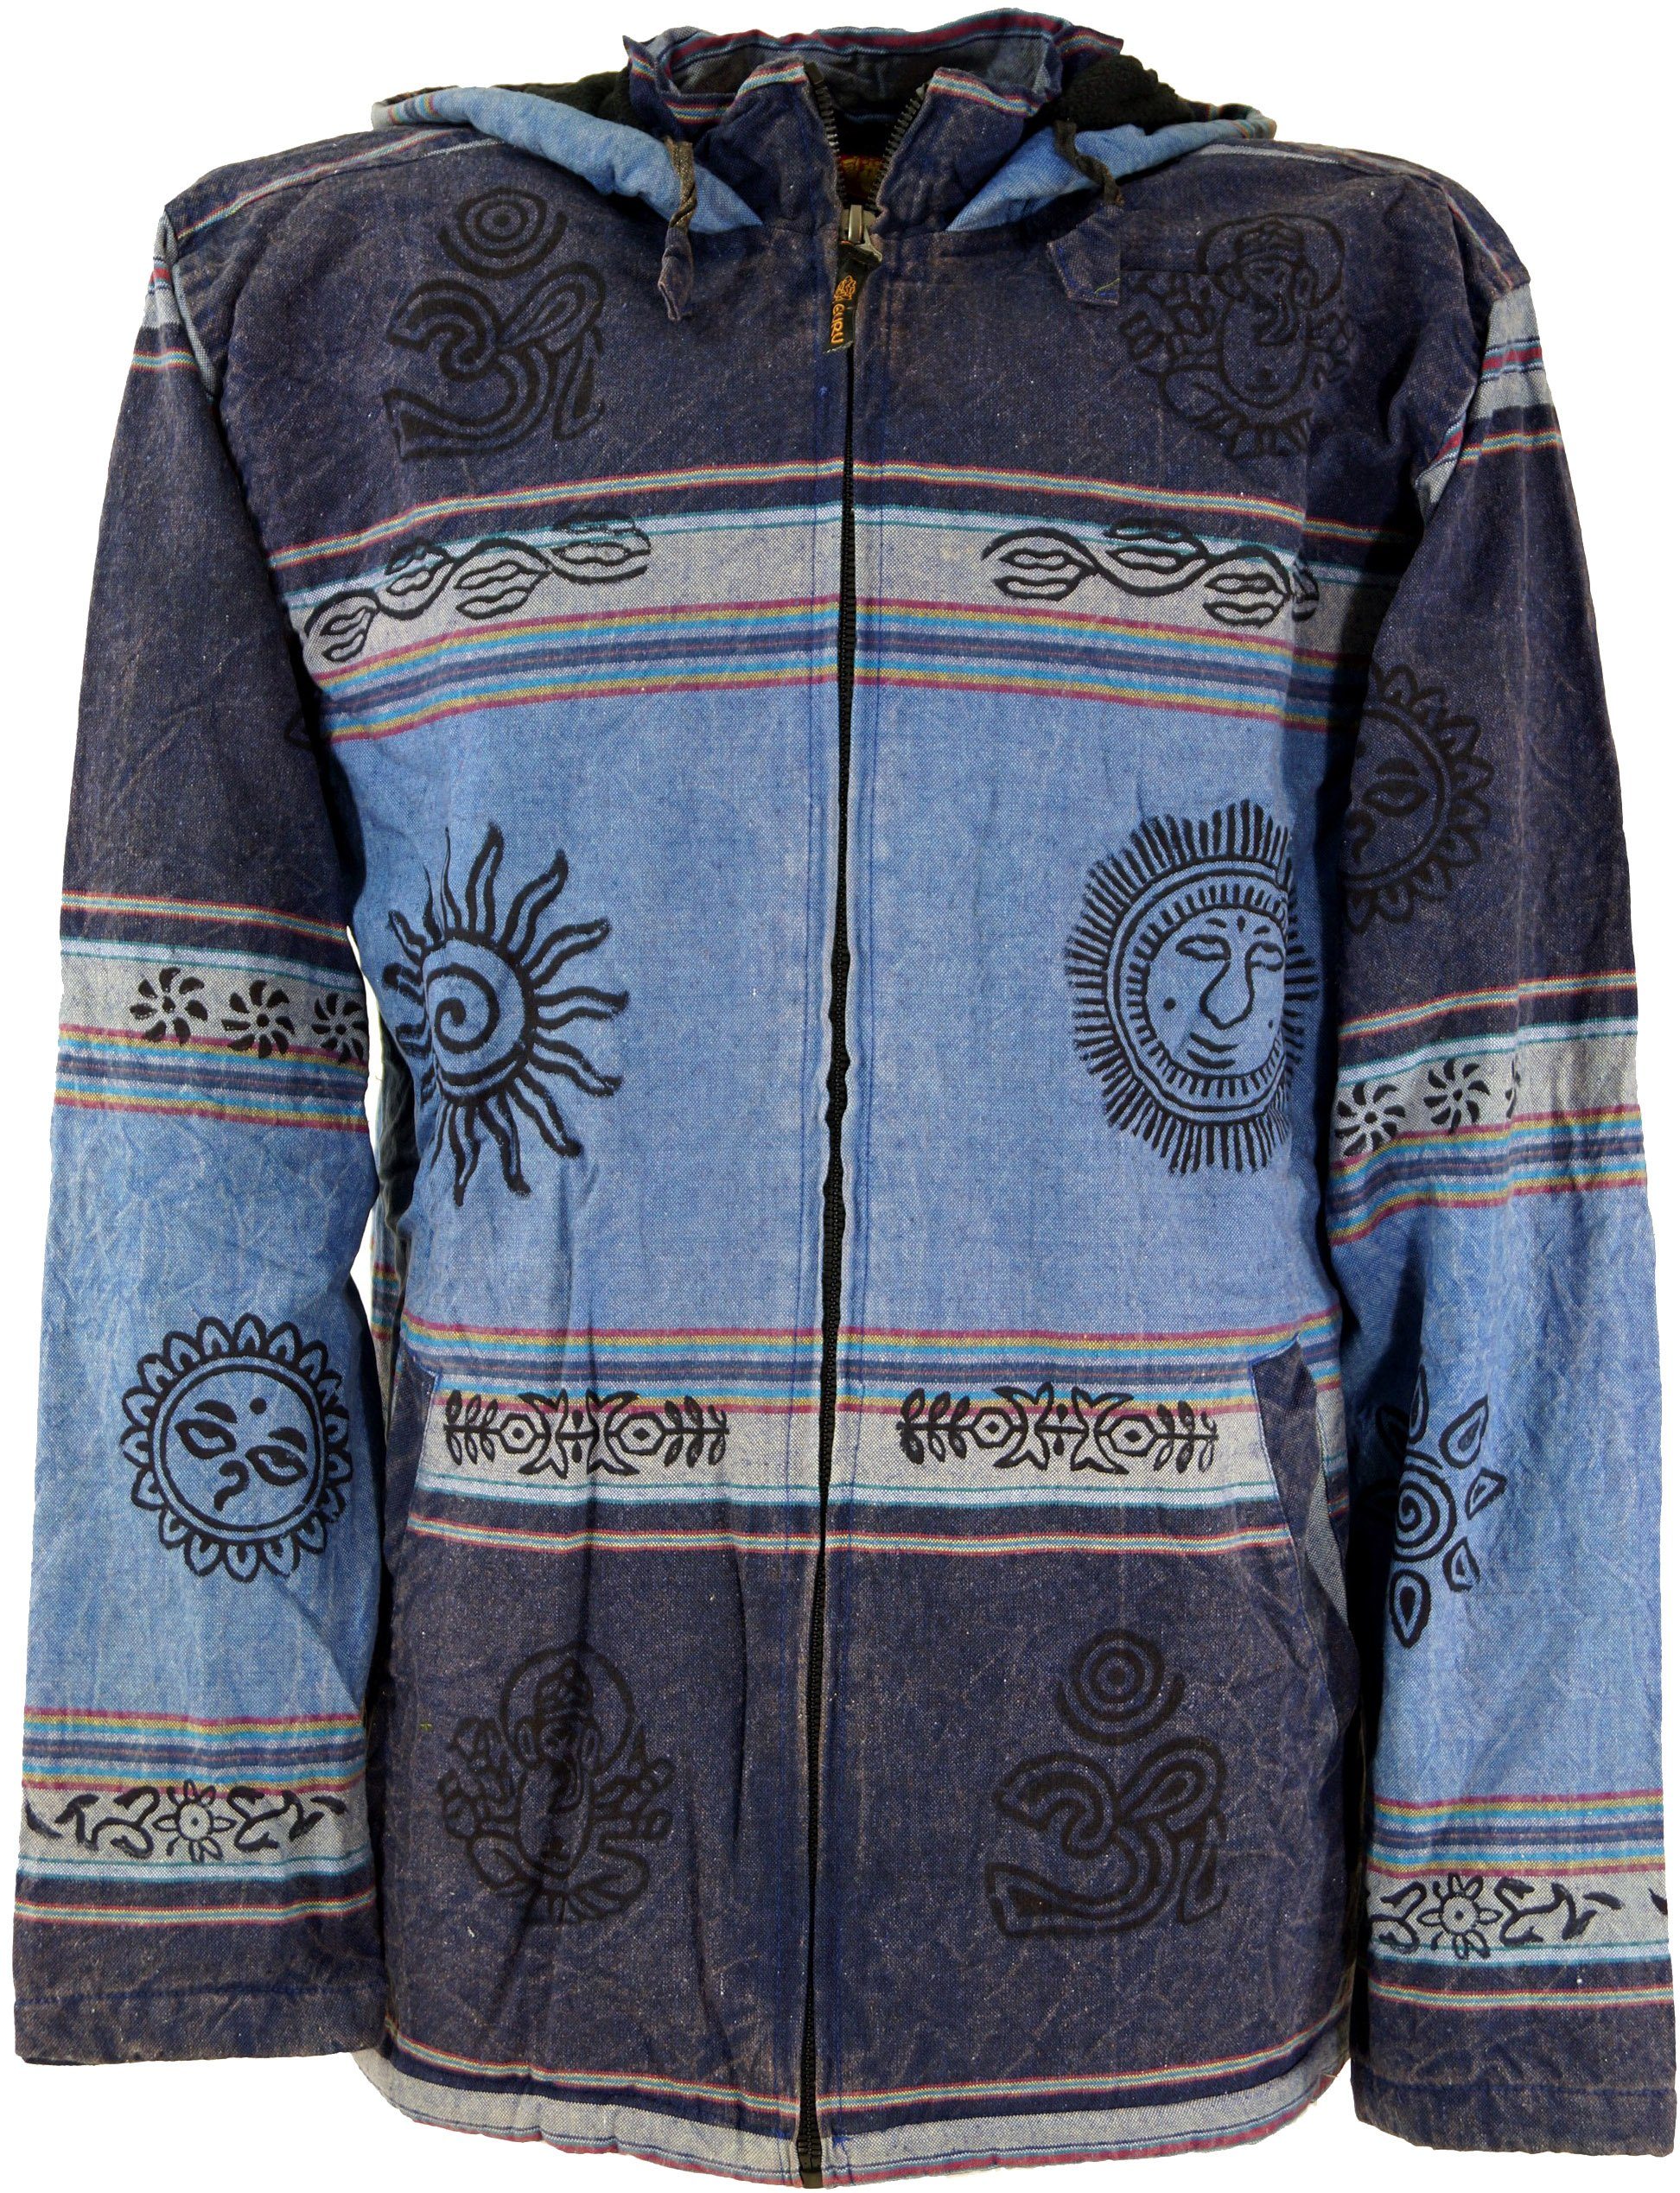 Guru-Shop alternative blau Strickjacke Bekleidung Kapuzen - Goa Jacke, Jacke Ethno